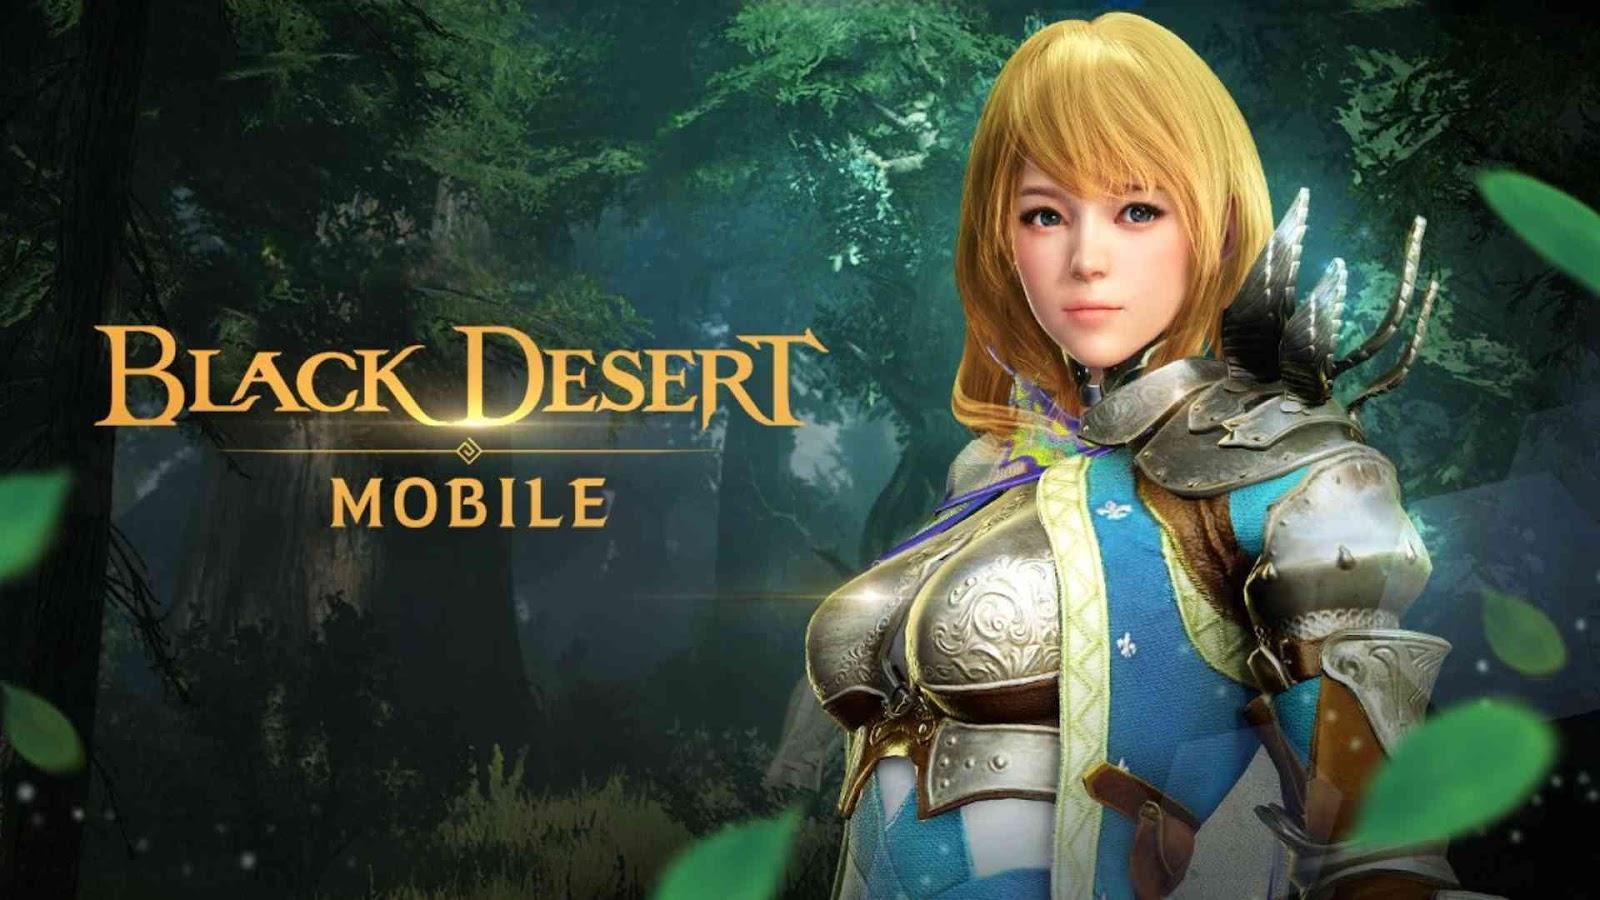 Black Desert mobile Global